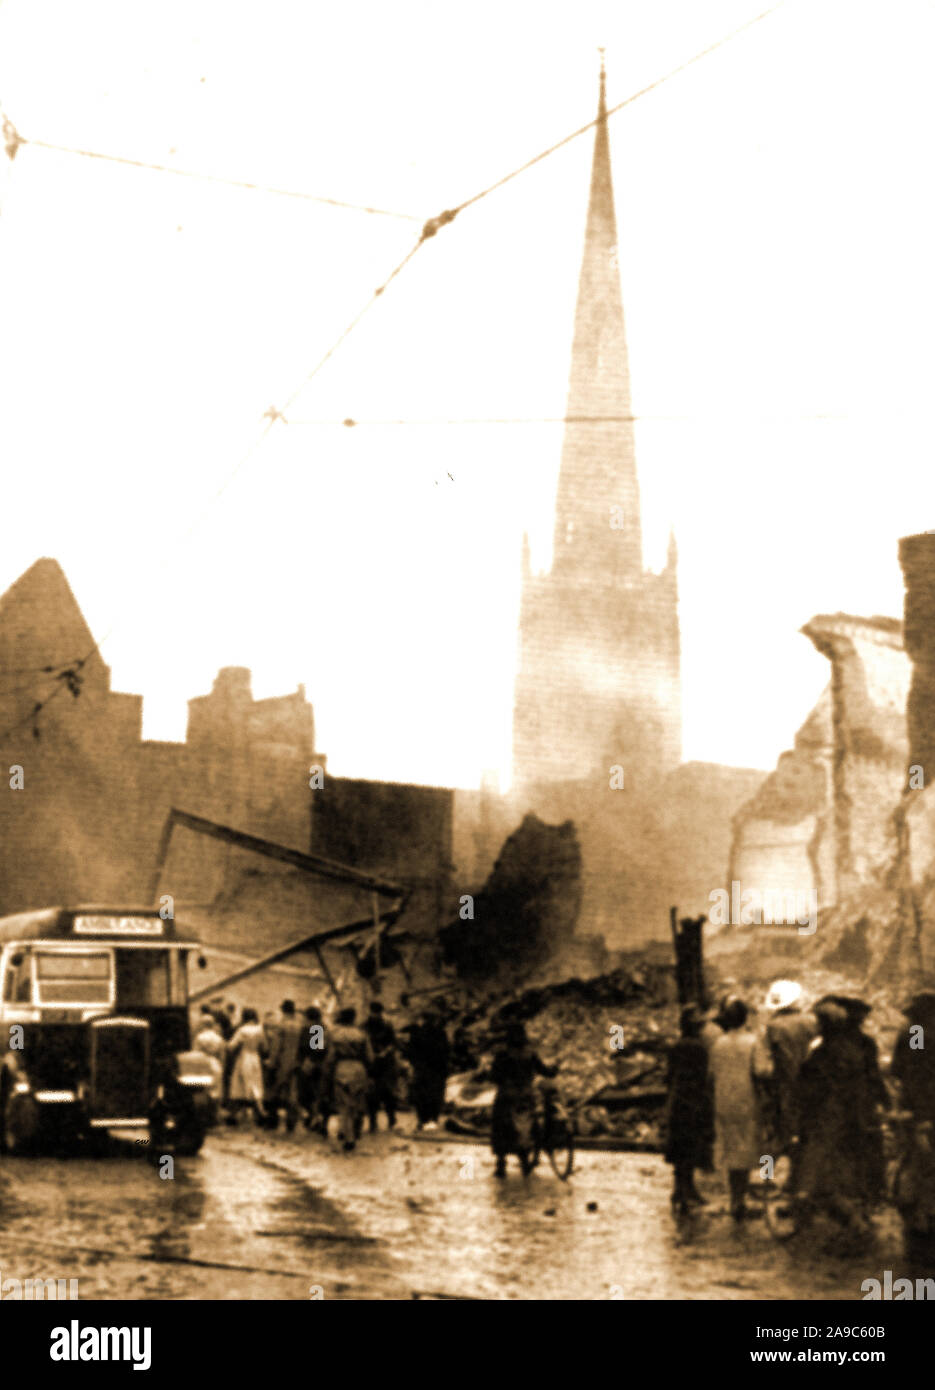 La DEUXIÈME GUERRE MONDIALE - un autobus utilisé comme ambulance après le bombardement dévastateur sur Coventry UK en 1941 (Coventry Blitz). L'église Holy Trinity s'élève au-dessus d'une scène de dévastation totale. Banque D'Images